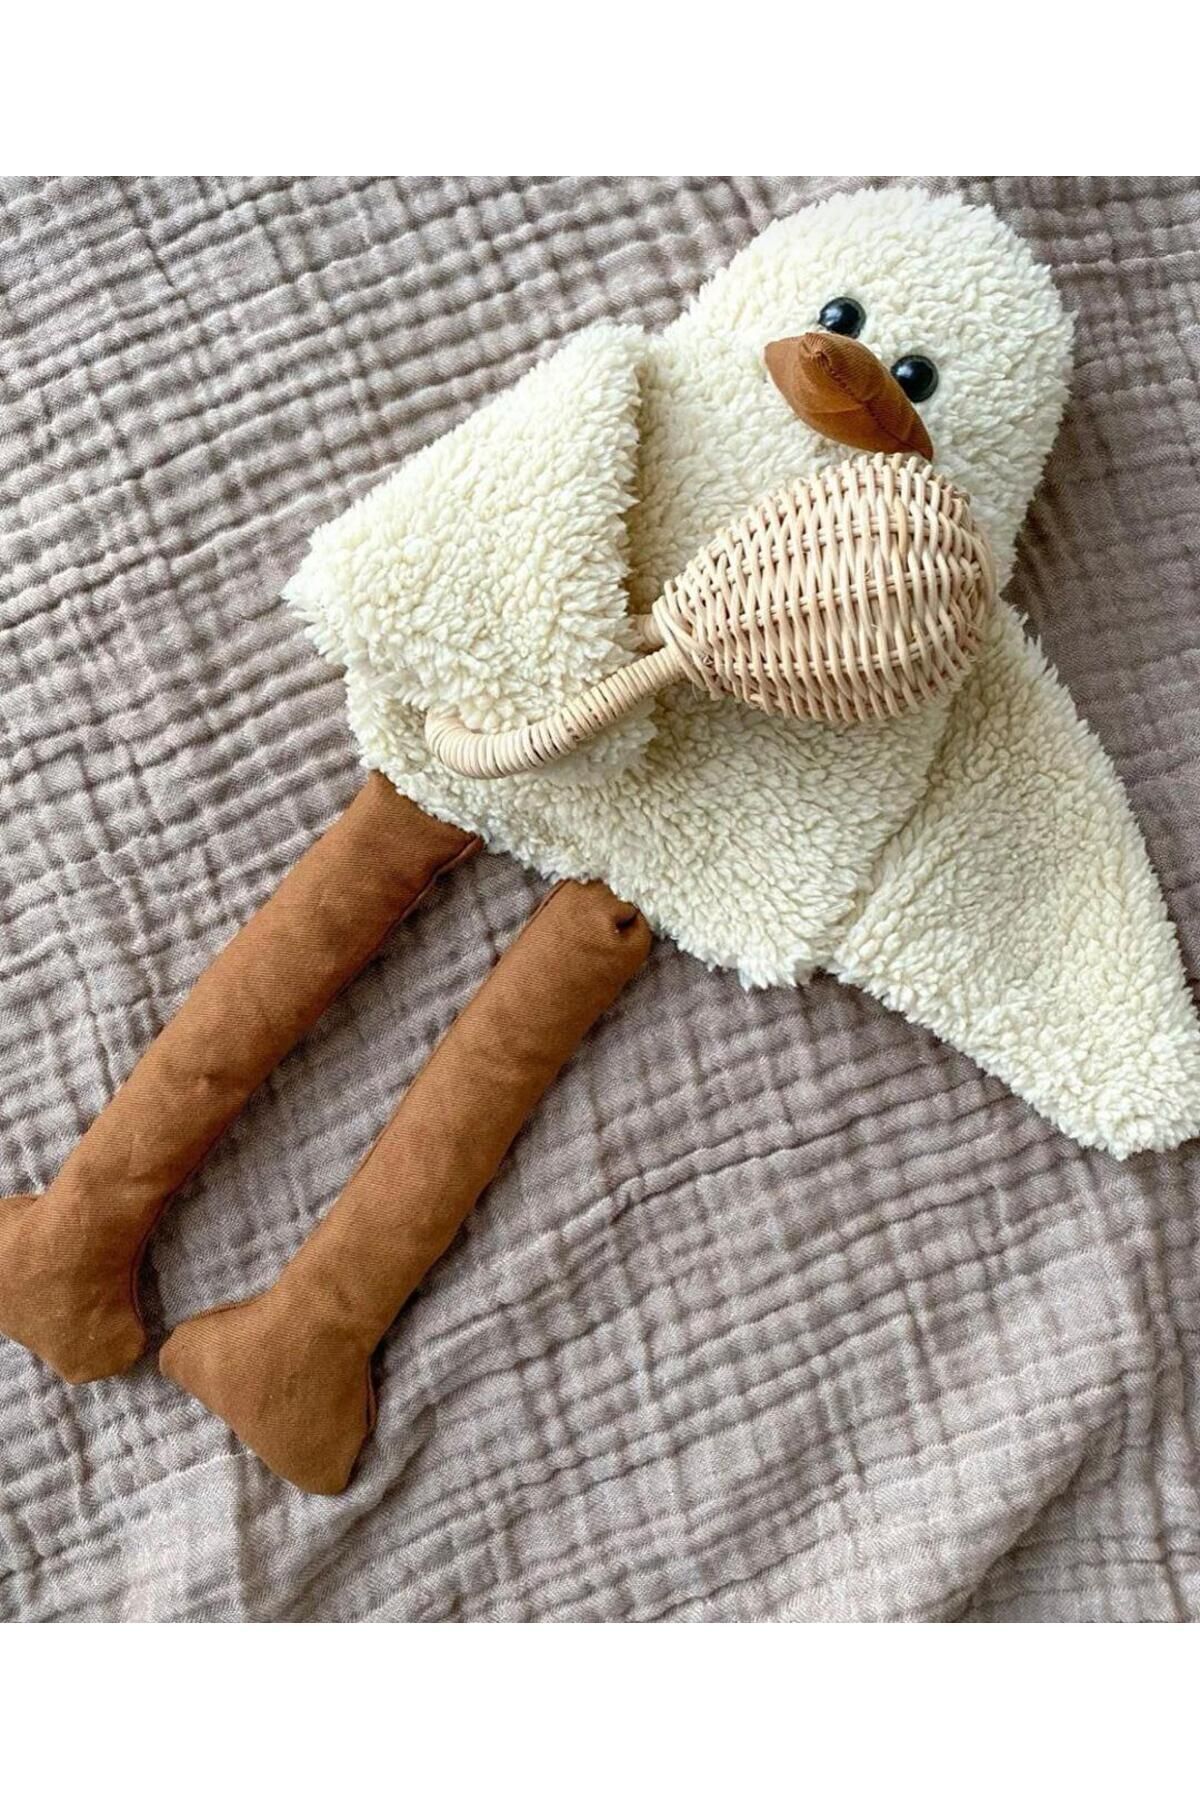 Sole Çocuk Bebek Uyku Arkadaşı Duffy Ördek- Peluş Ördek, Uzun Bacak Kuş - Dekoratif Yastık, 50 Cm